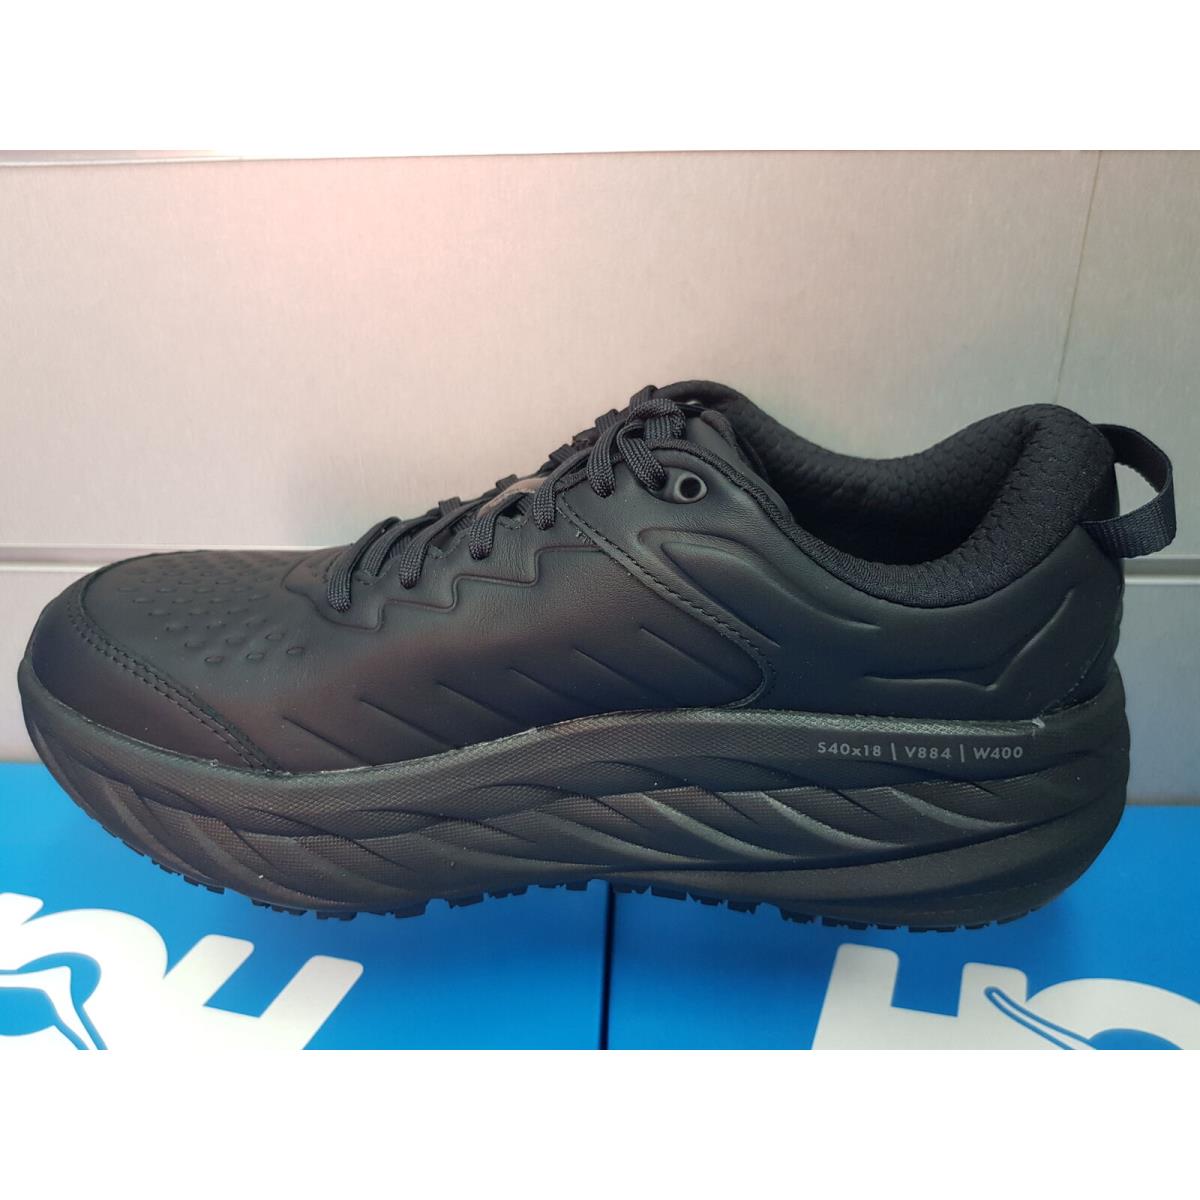 Hoka One One Bondi SR 1110520/BBLC Black Running Shoes For Men`s